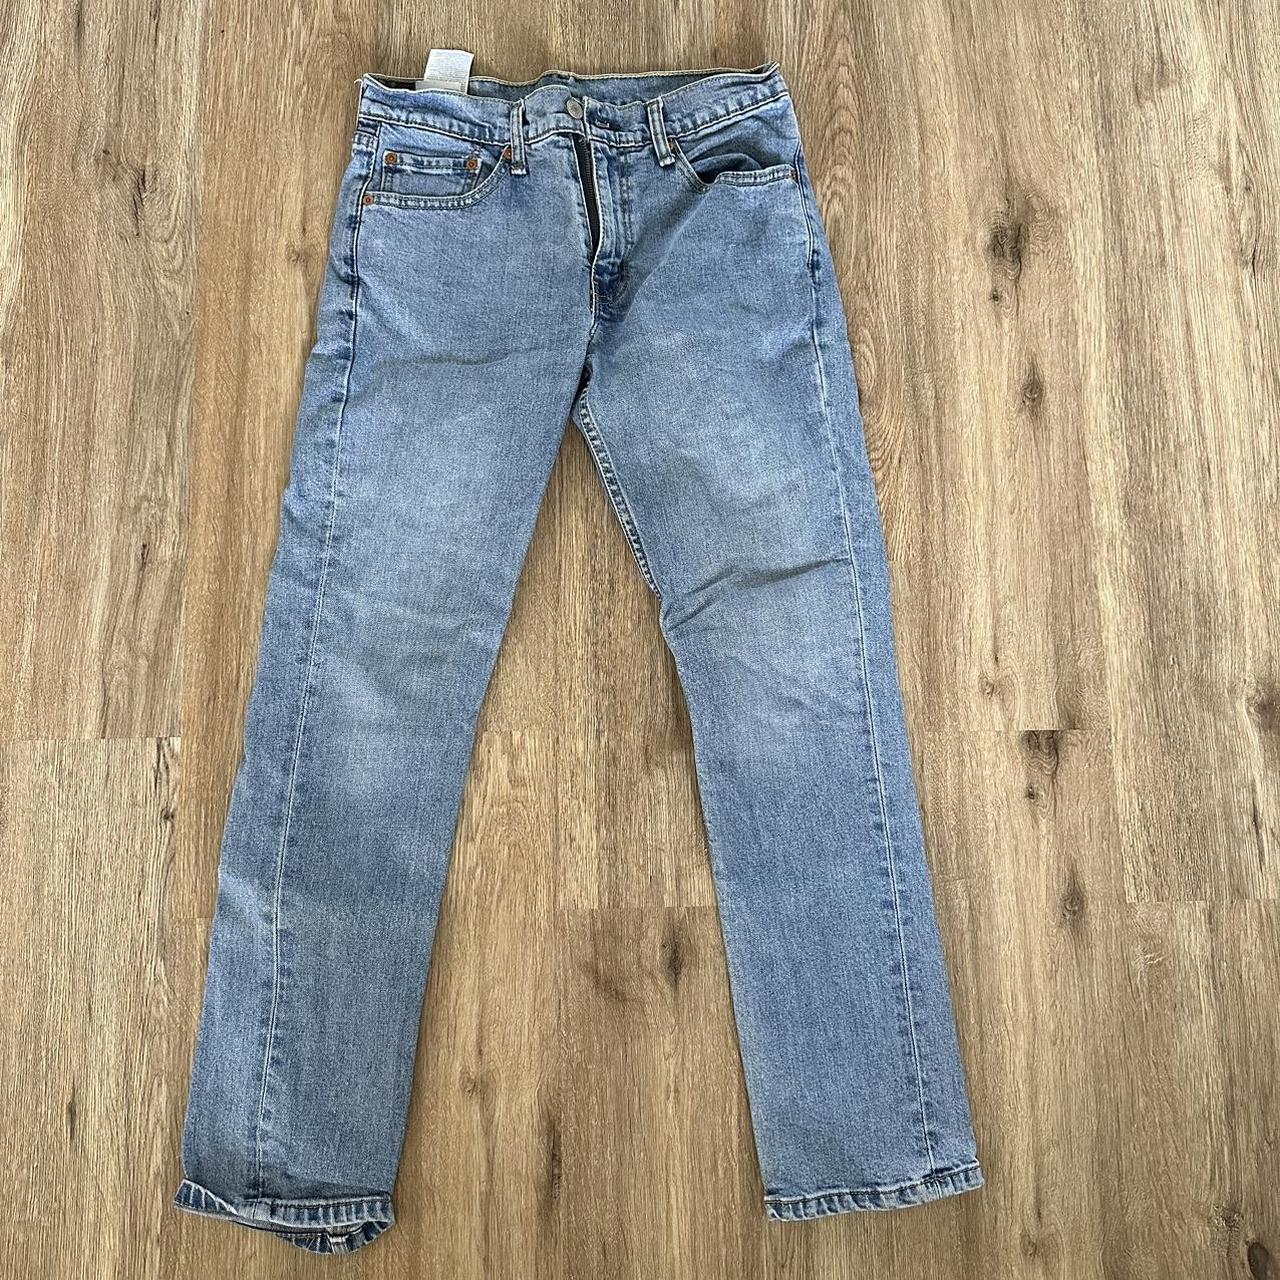 Levi’s 511 Jeans - Men’s 31x30 #levis #vintage... - Depop